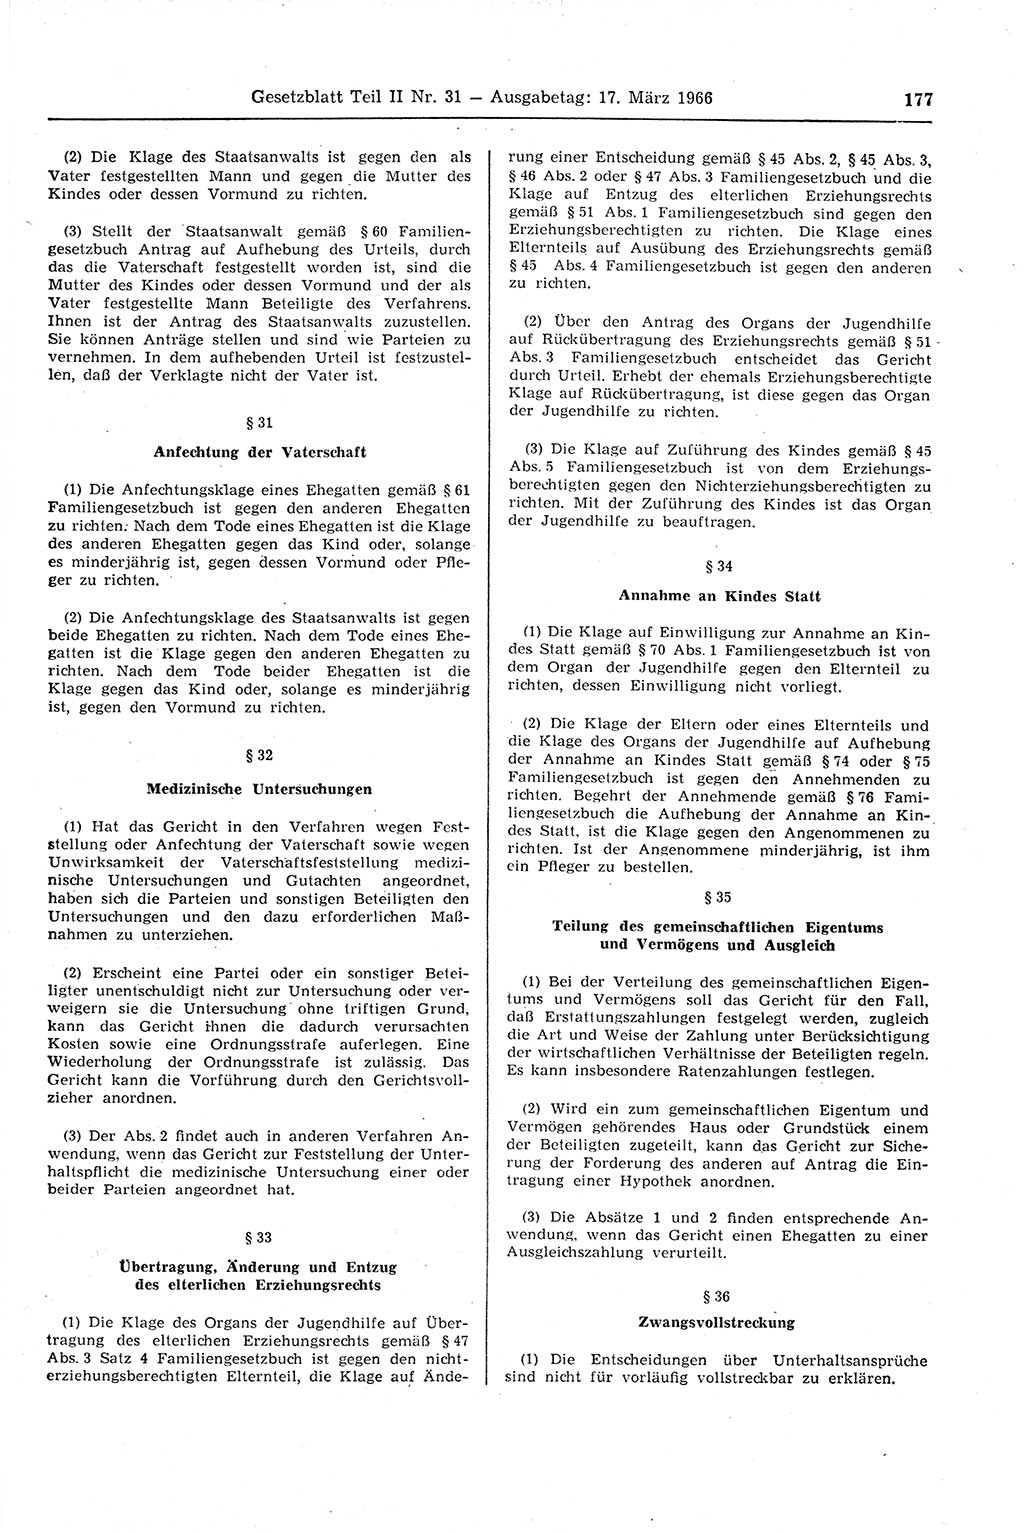 Gesetzblatt (GBl.) der Deutschen Demokratischen Republik (DDR) Teil ⅠⅠ 1966, Seite 177 (GBl. DDR ⅠⅠ 1966, S. 177)